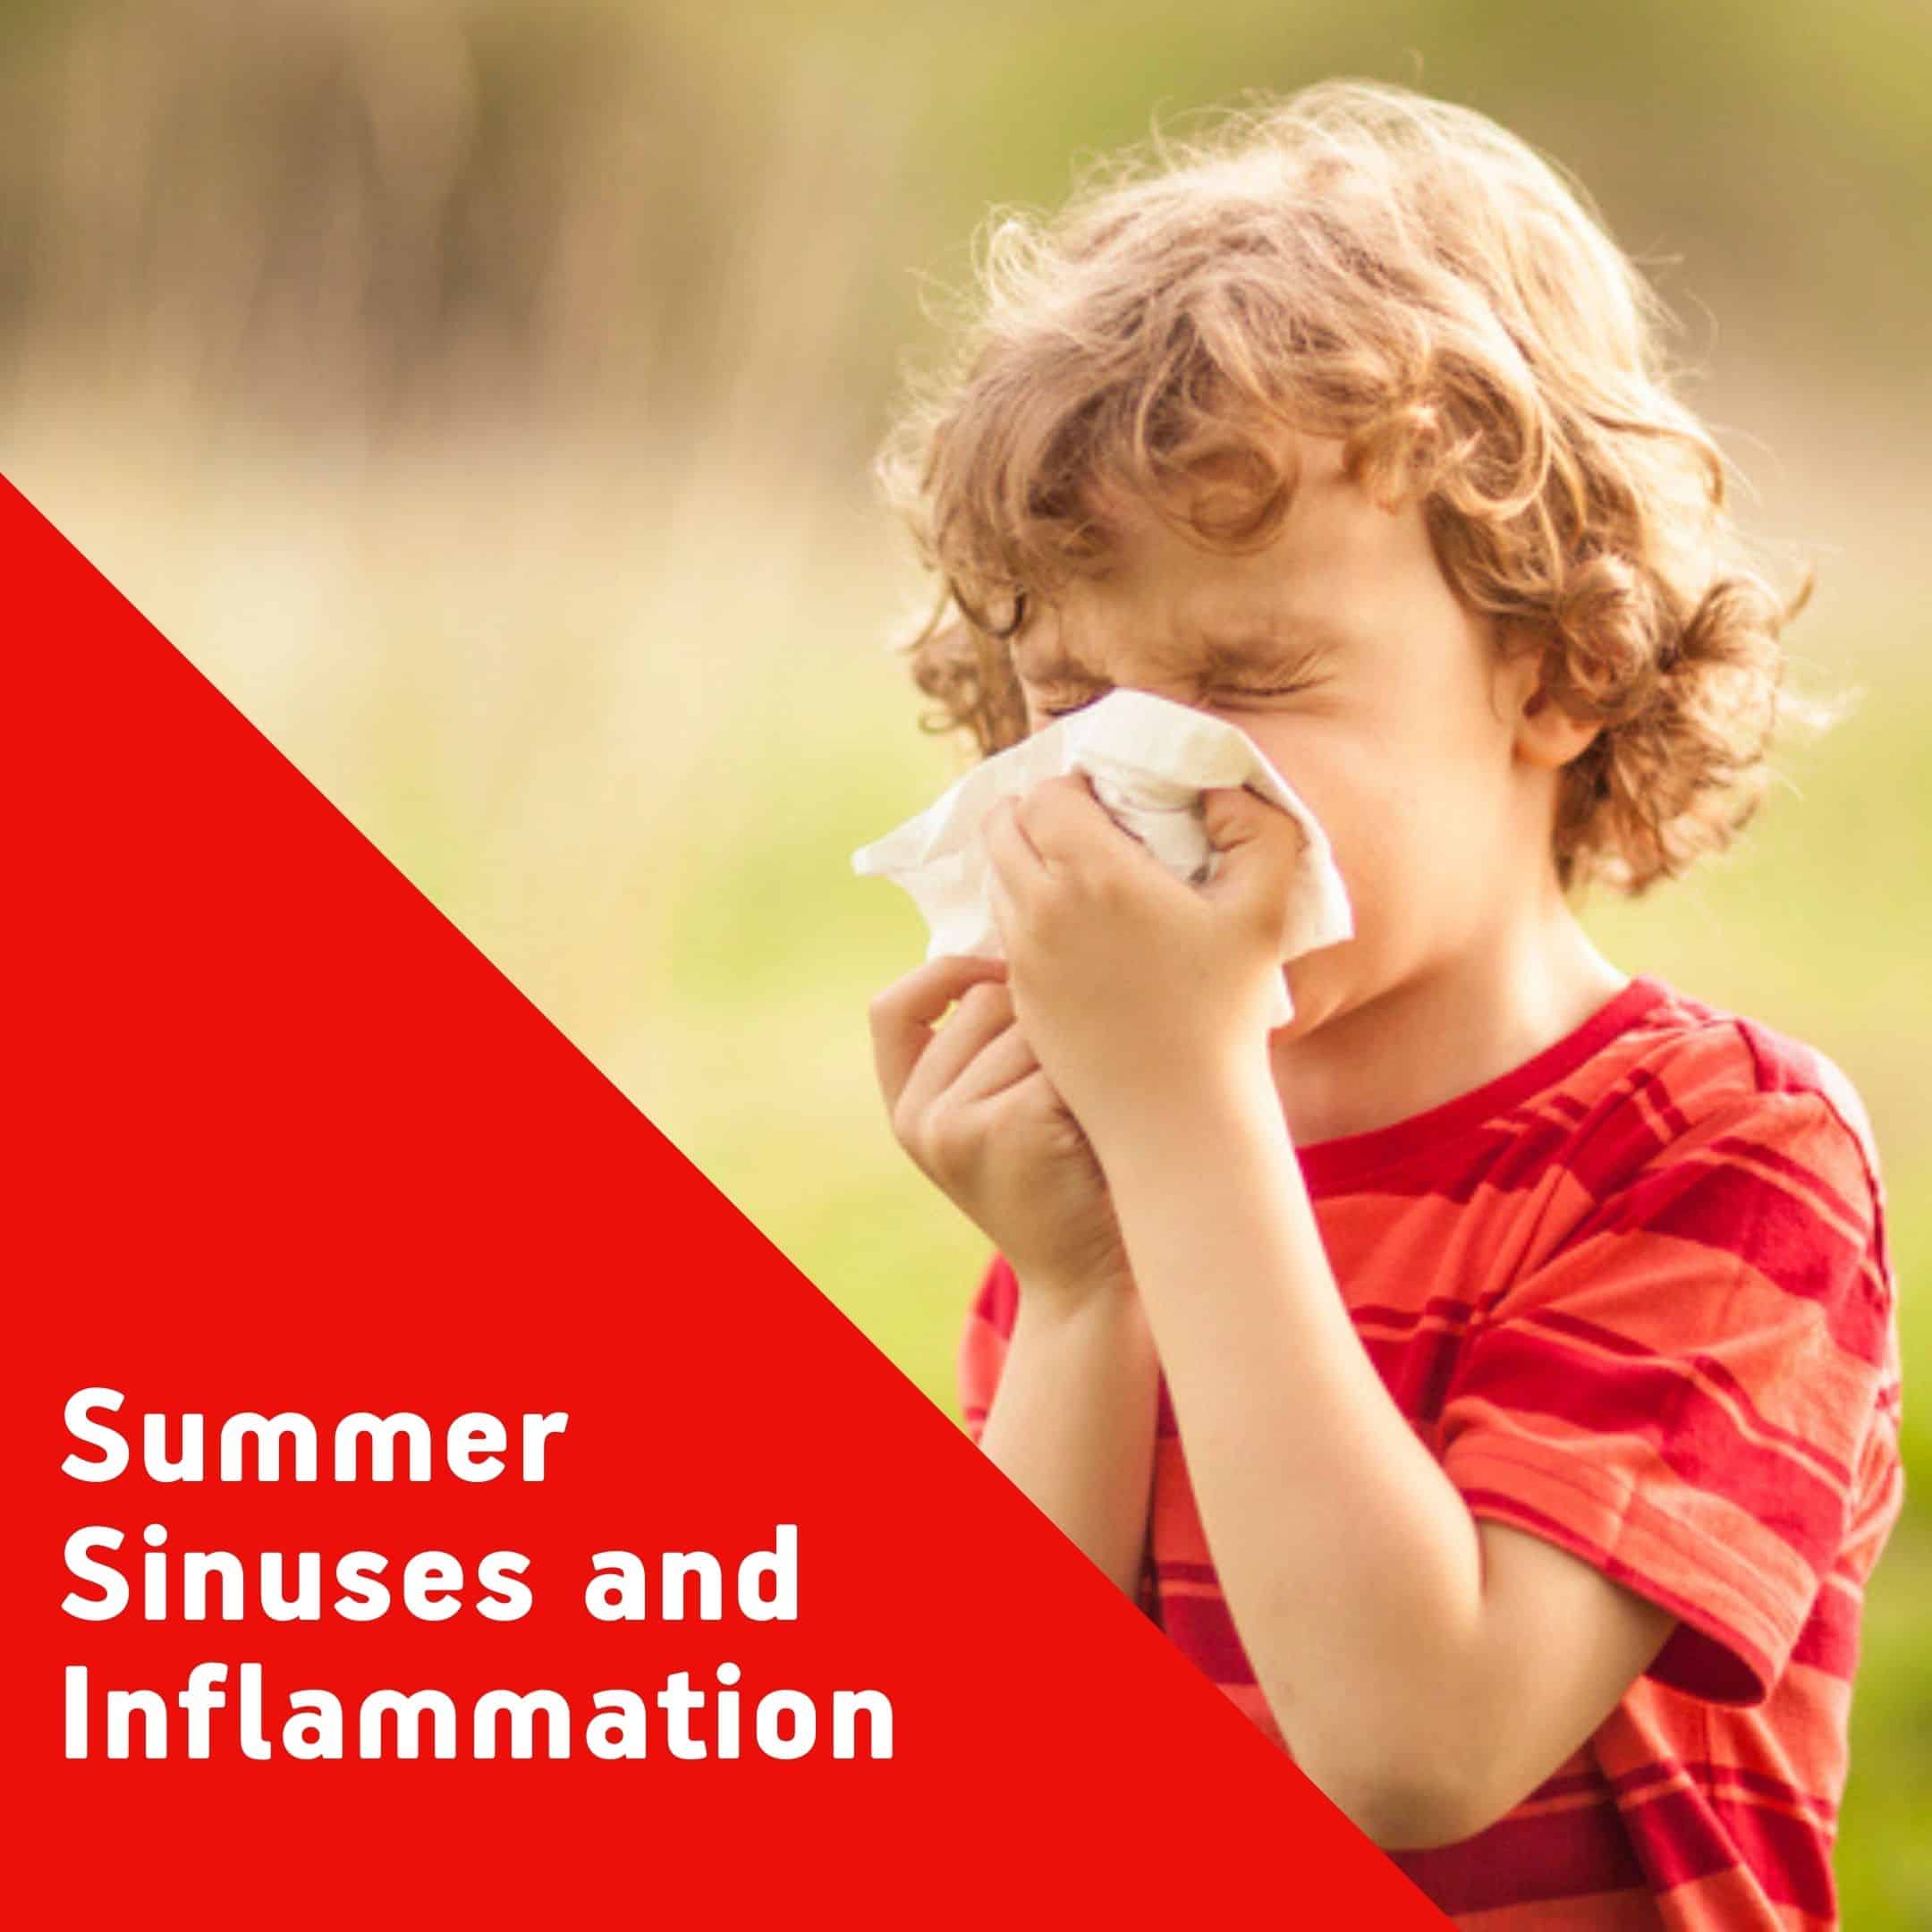 sinus inflammation